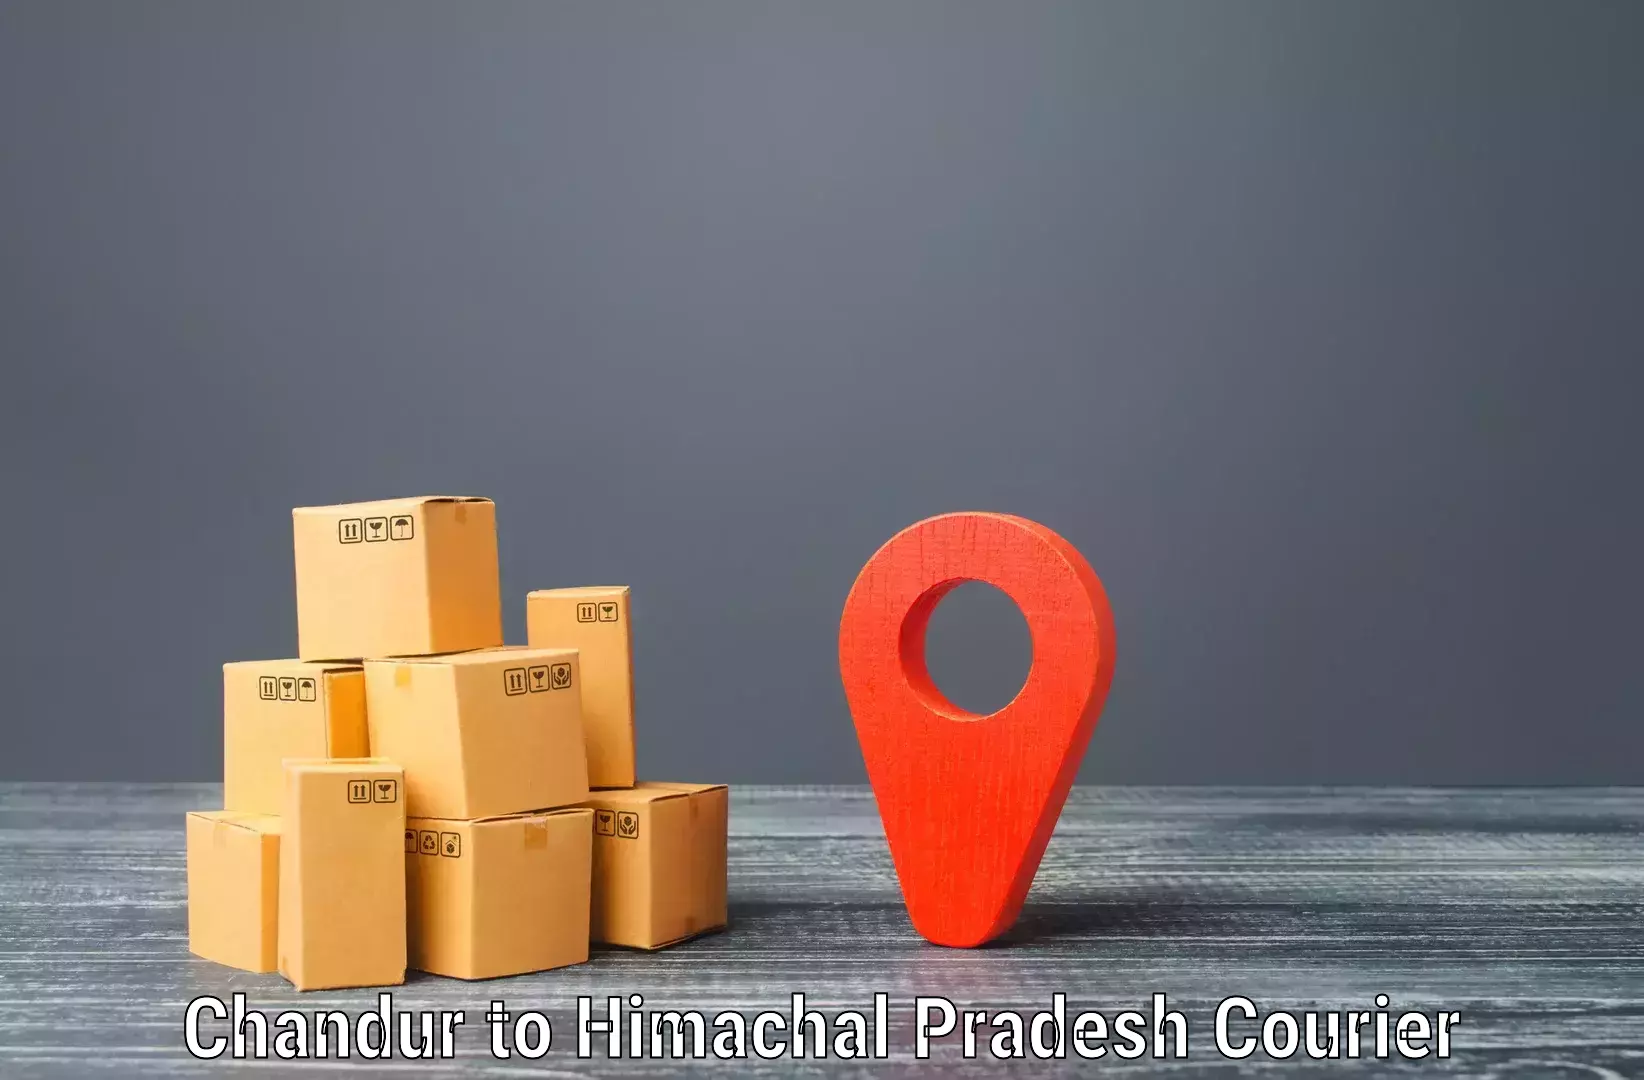 Efficient parcel service Chandur to Rajgarh Sirmaur